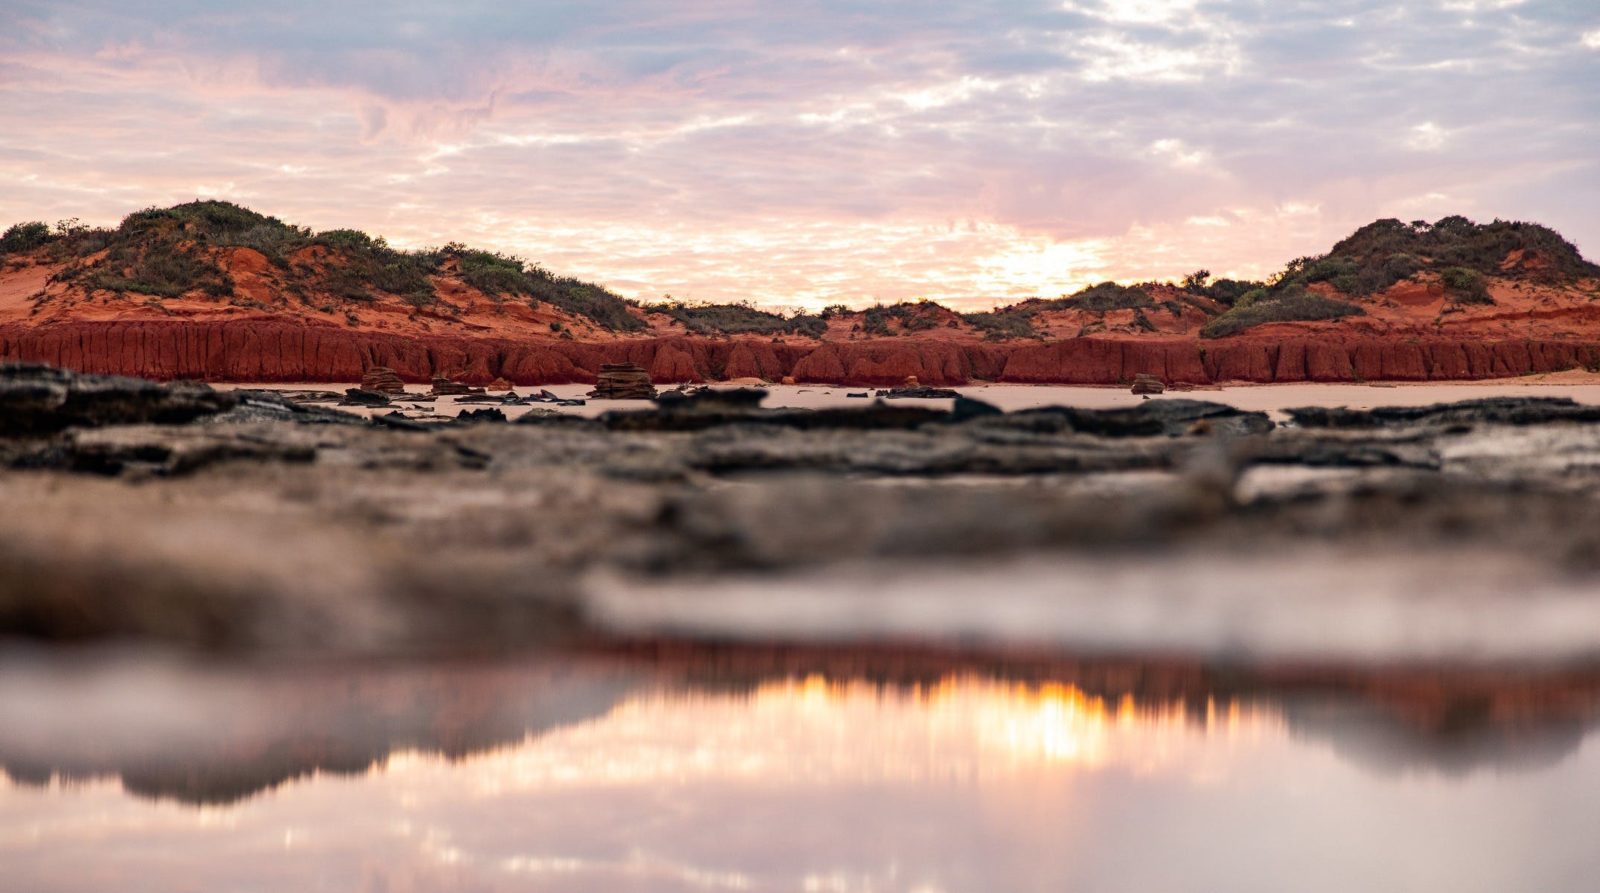 Reddell Beach, Minyirr, Western Australia